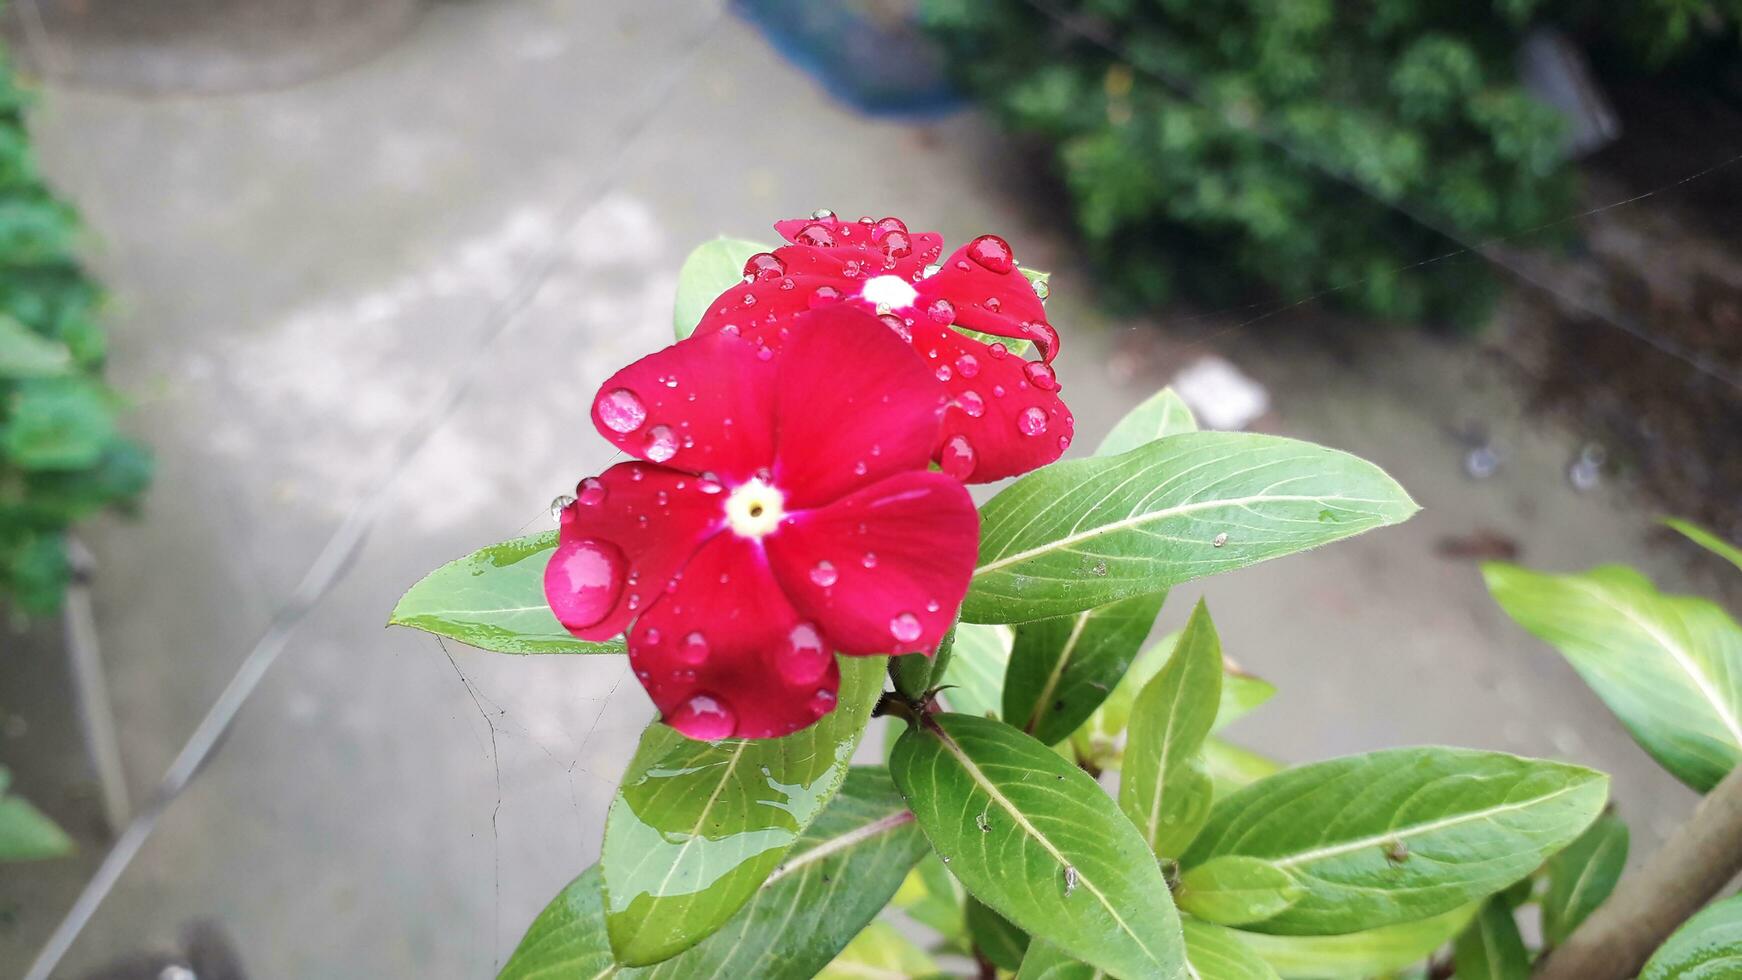 rot Blume mit Wasser fallen foto